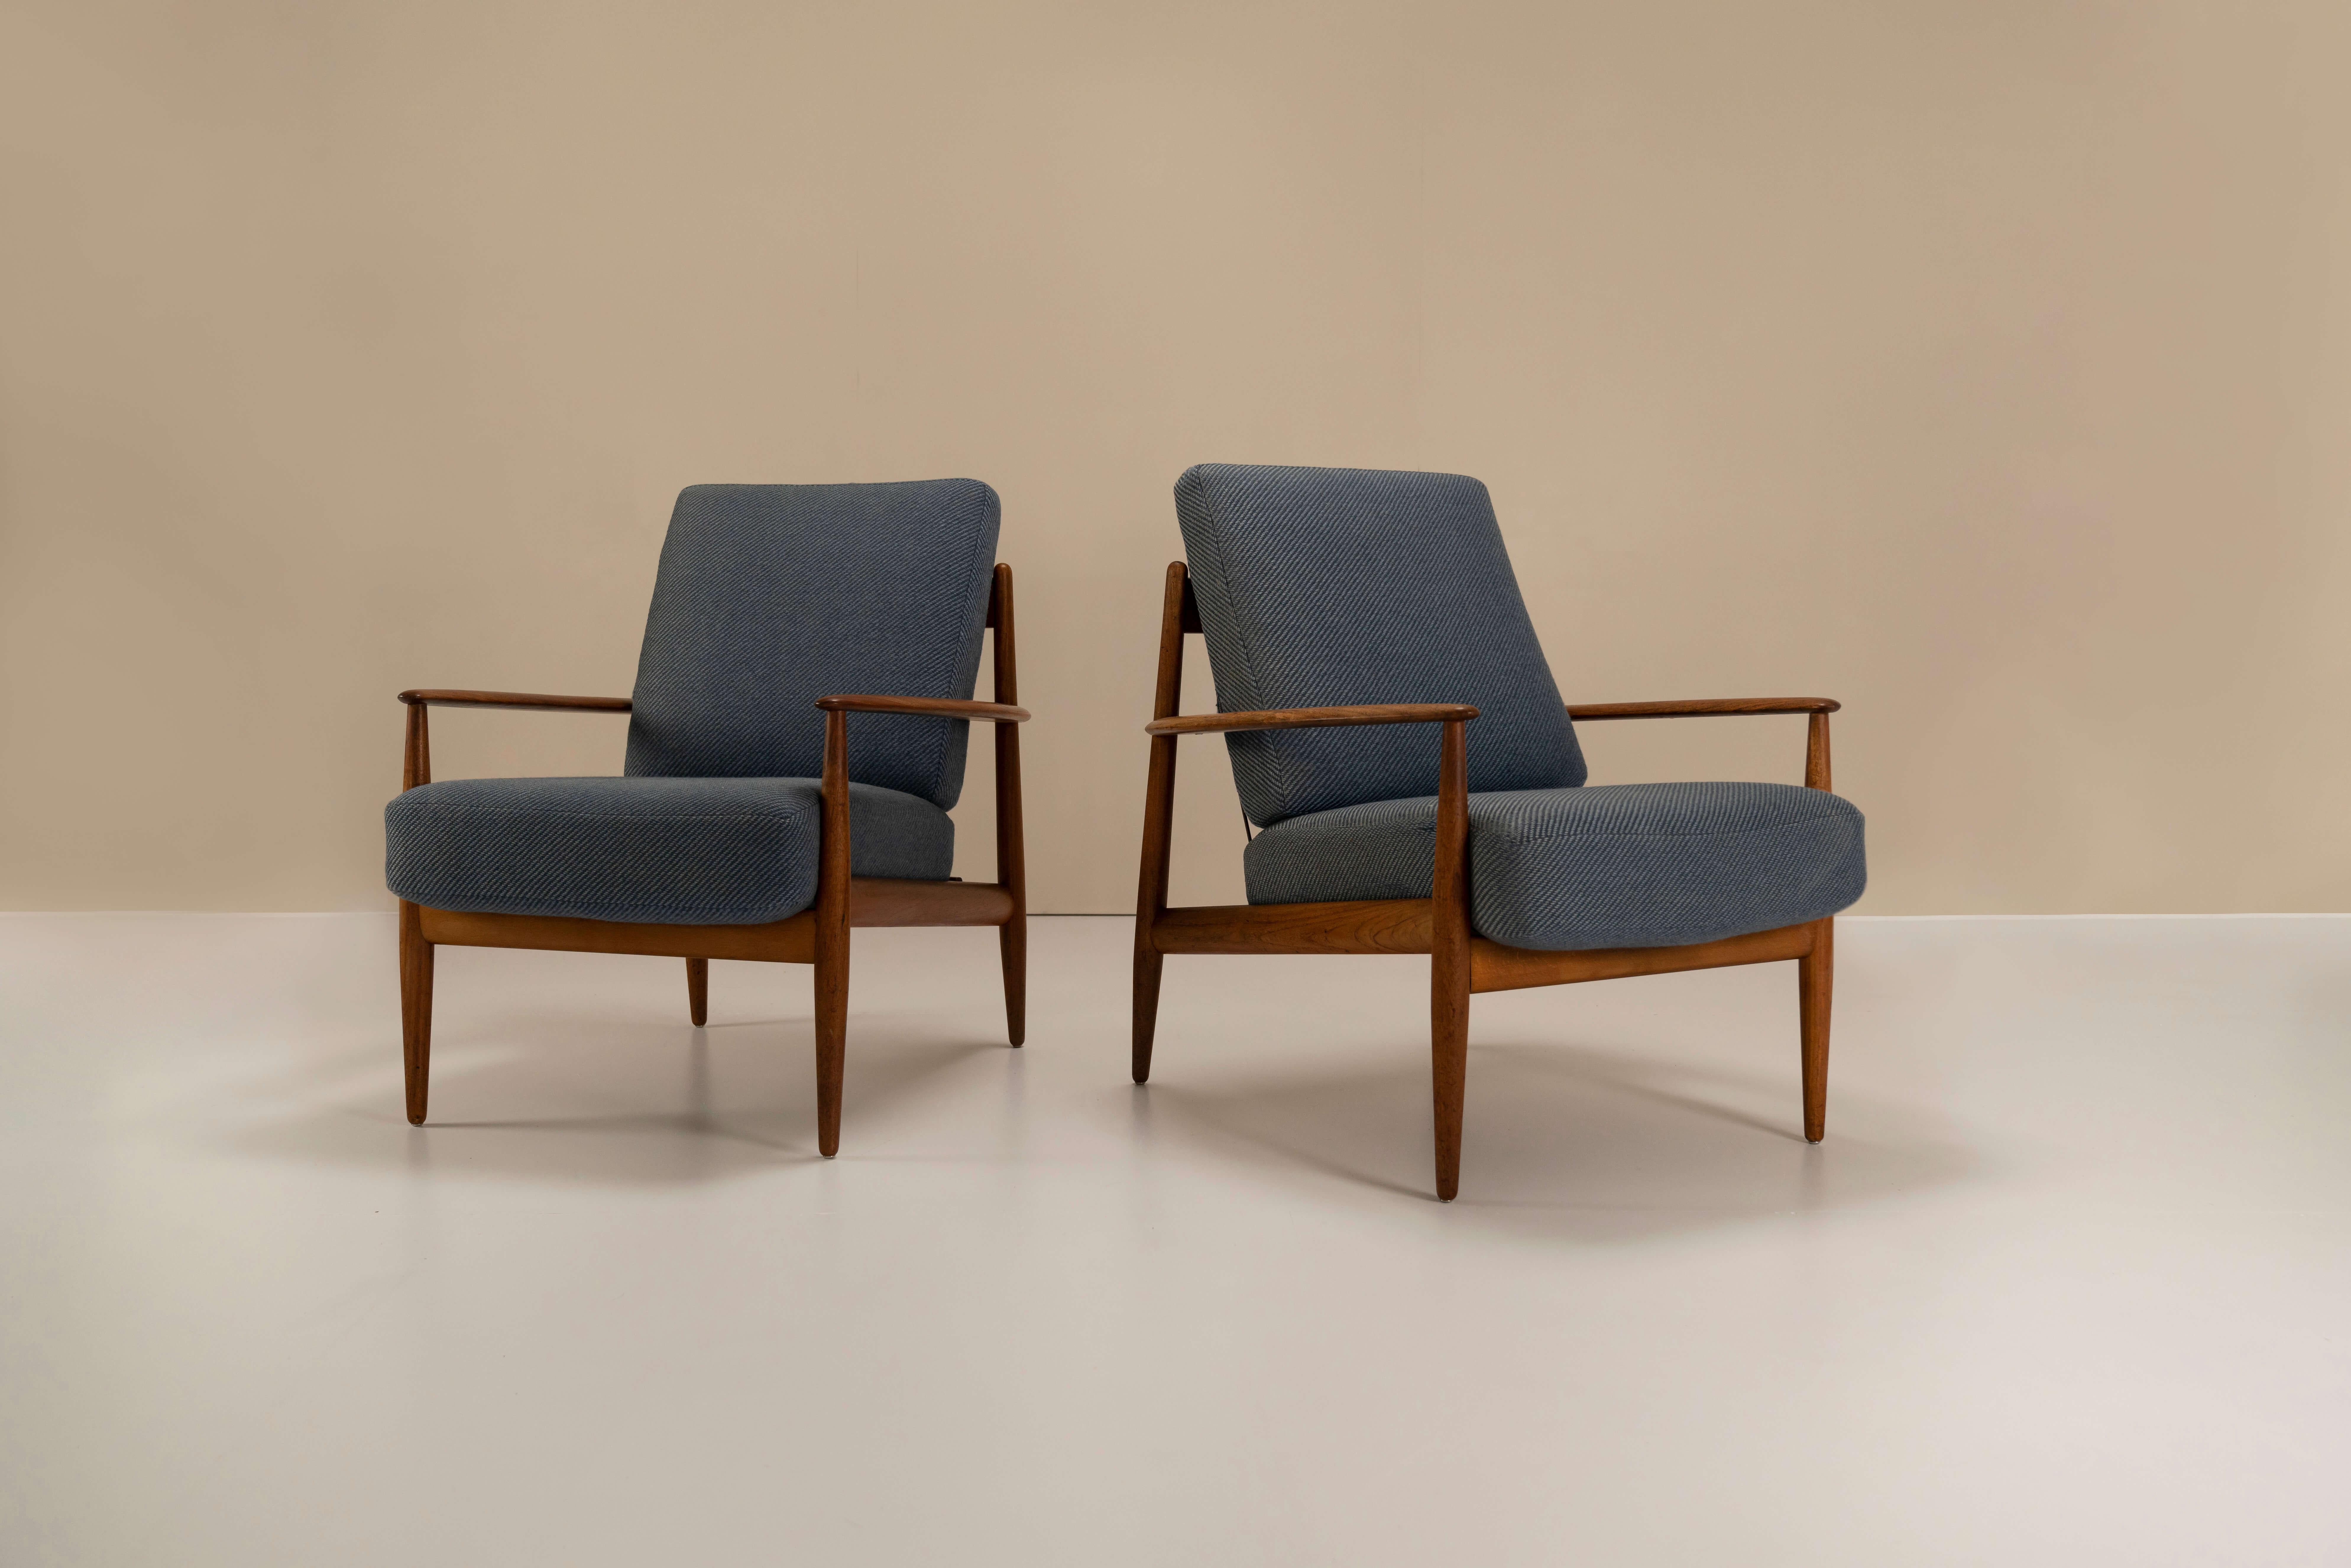 Charmantes Paar Grete Jalk Modell 118 Sessel aus Teakholz und Stoff für France & Daverkosen von 1955. Diese beiden bequemen Stühle sind die ersten der Serie 118, die von Grete Jalk entworfen und 1955 hergestellt wurde. Die Rahmen dieser völlig